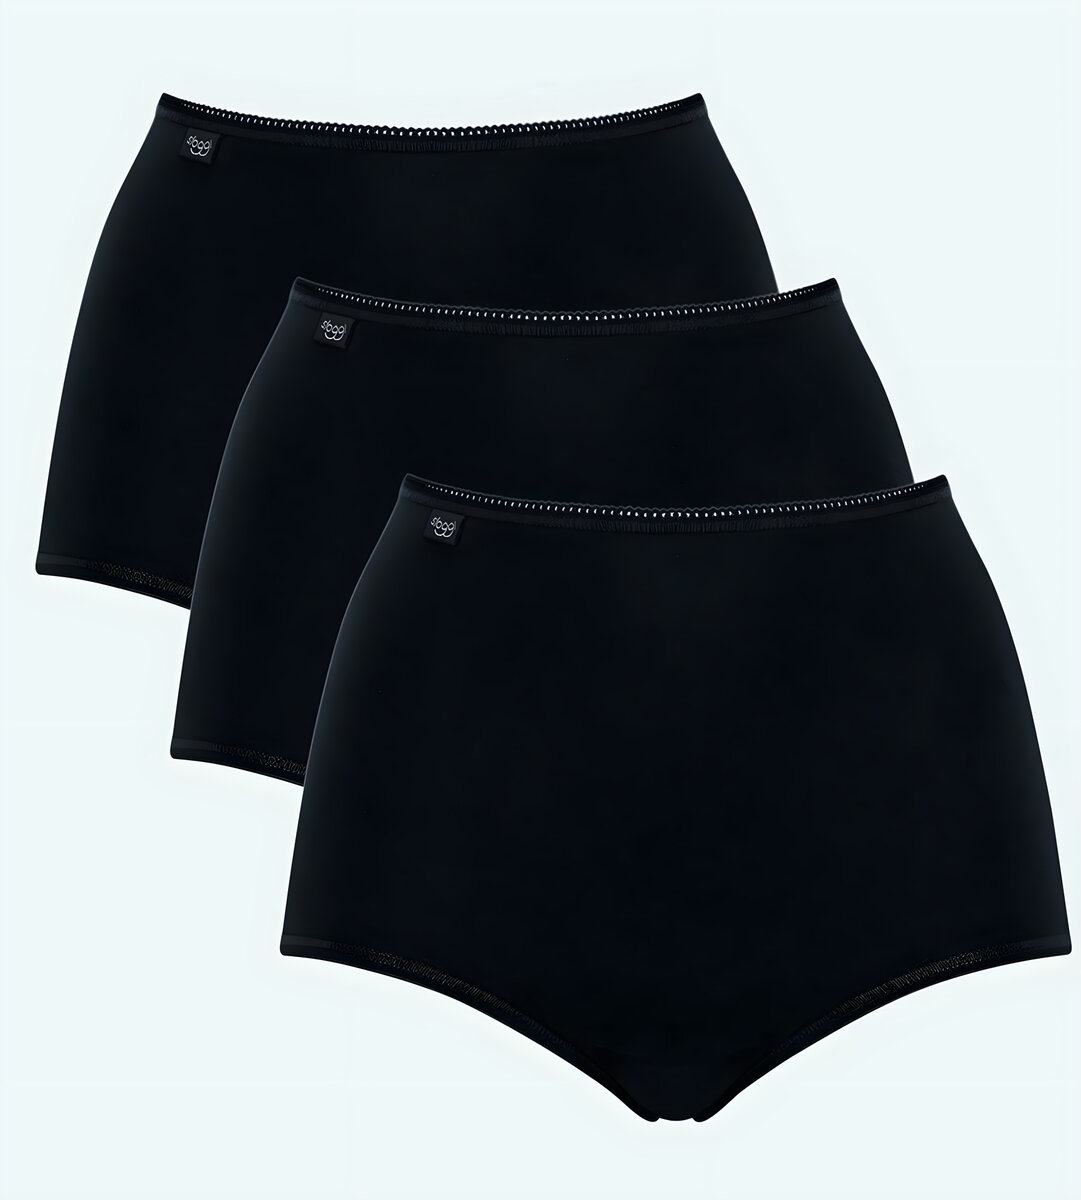 Dámské kalhoty Sloggi 7A1B35 Cotton Maxi C3P černé, BLACK 42 i343_10167190-0004-42